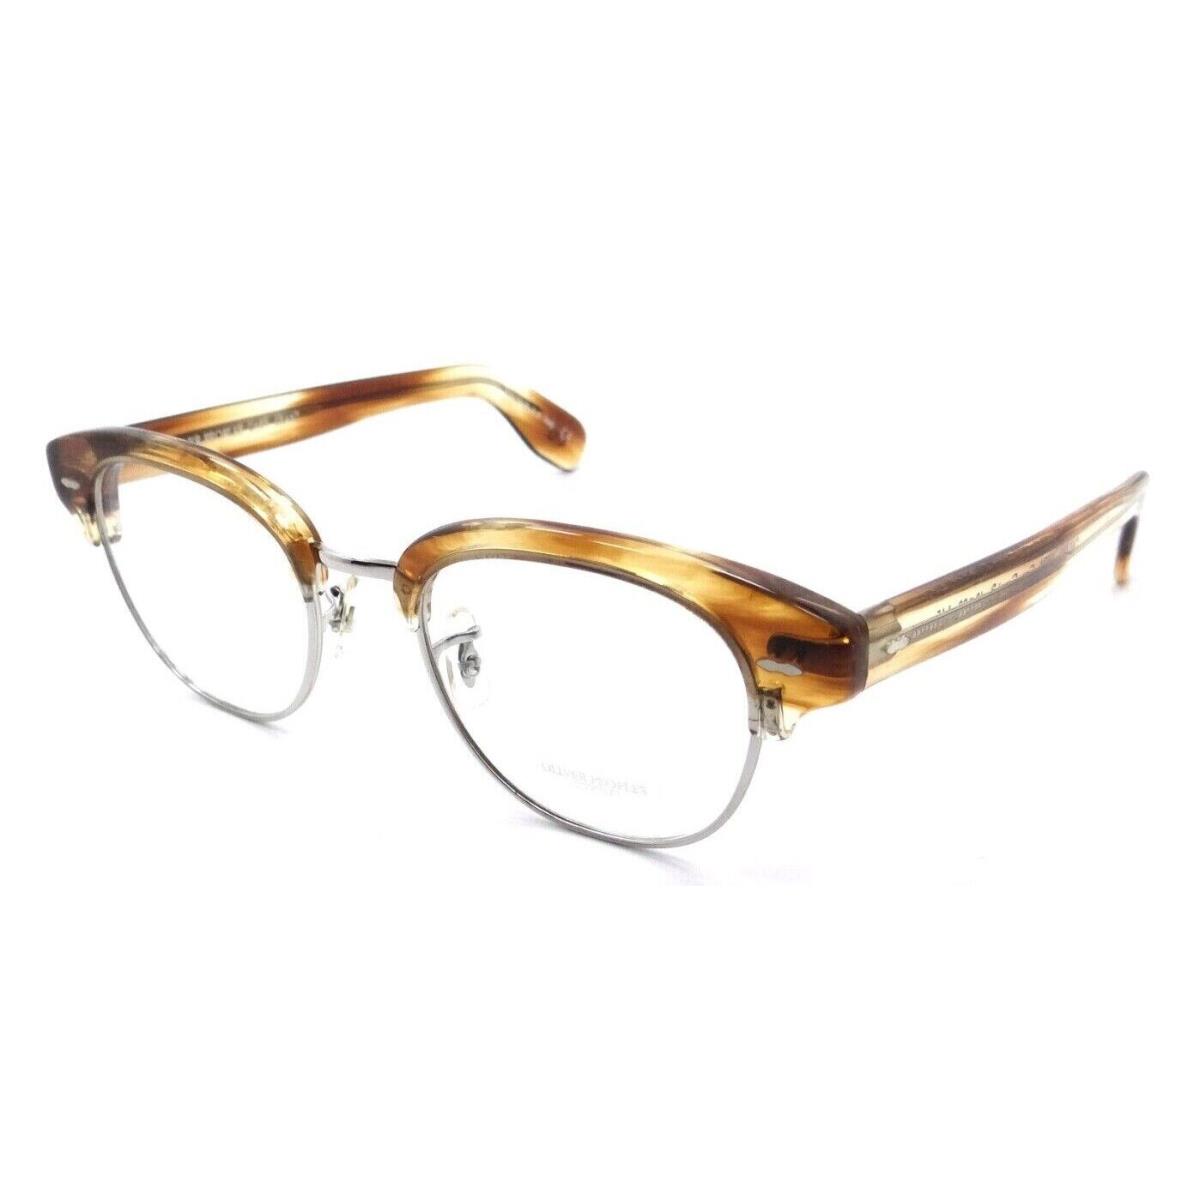 Oliver Peoples Eyeglasses Frames OV 5436 1674 48-20-145 Cary Grant 2 Honey Vsb - Frame: Multicolor